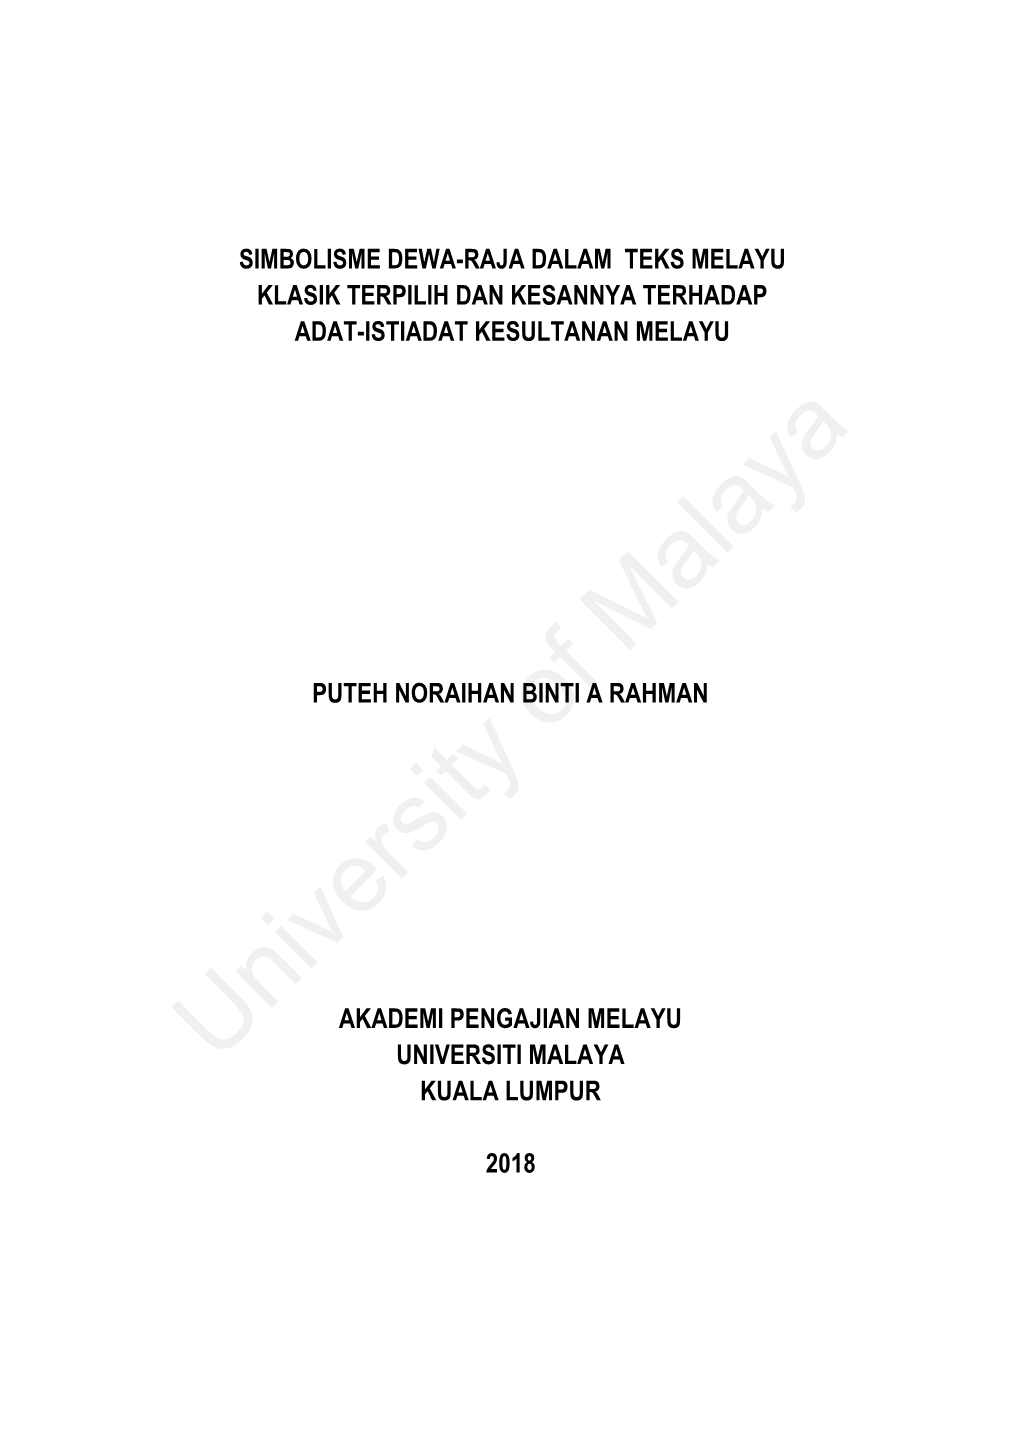 University of Malaya Tandatangan Saksi Tarikh 20 Julai 2018